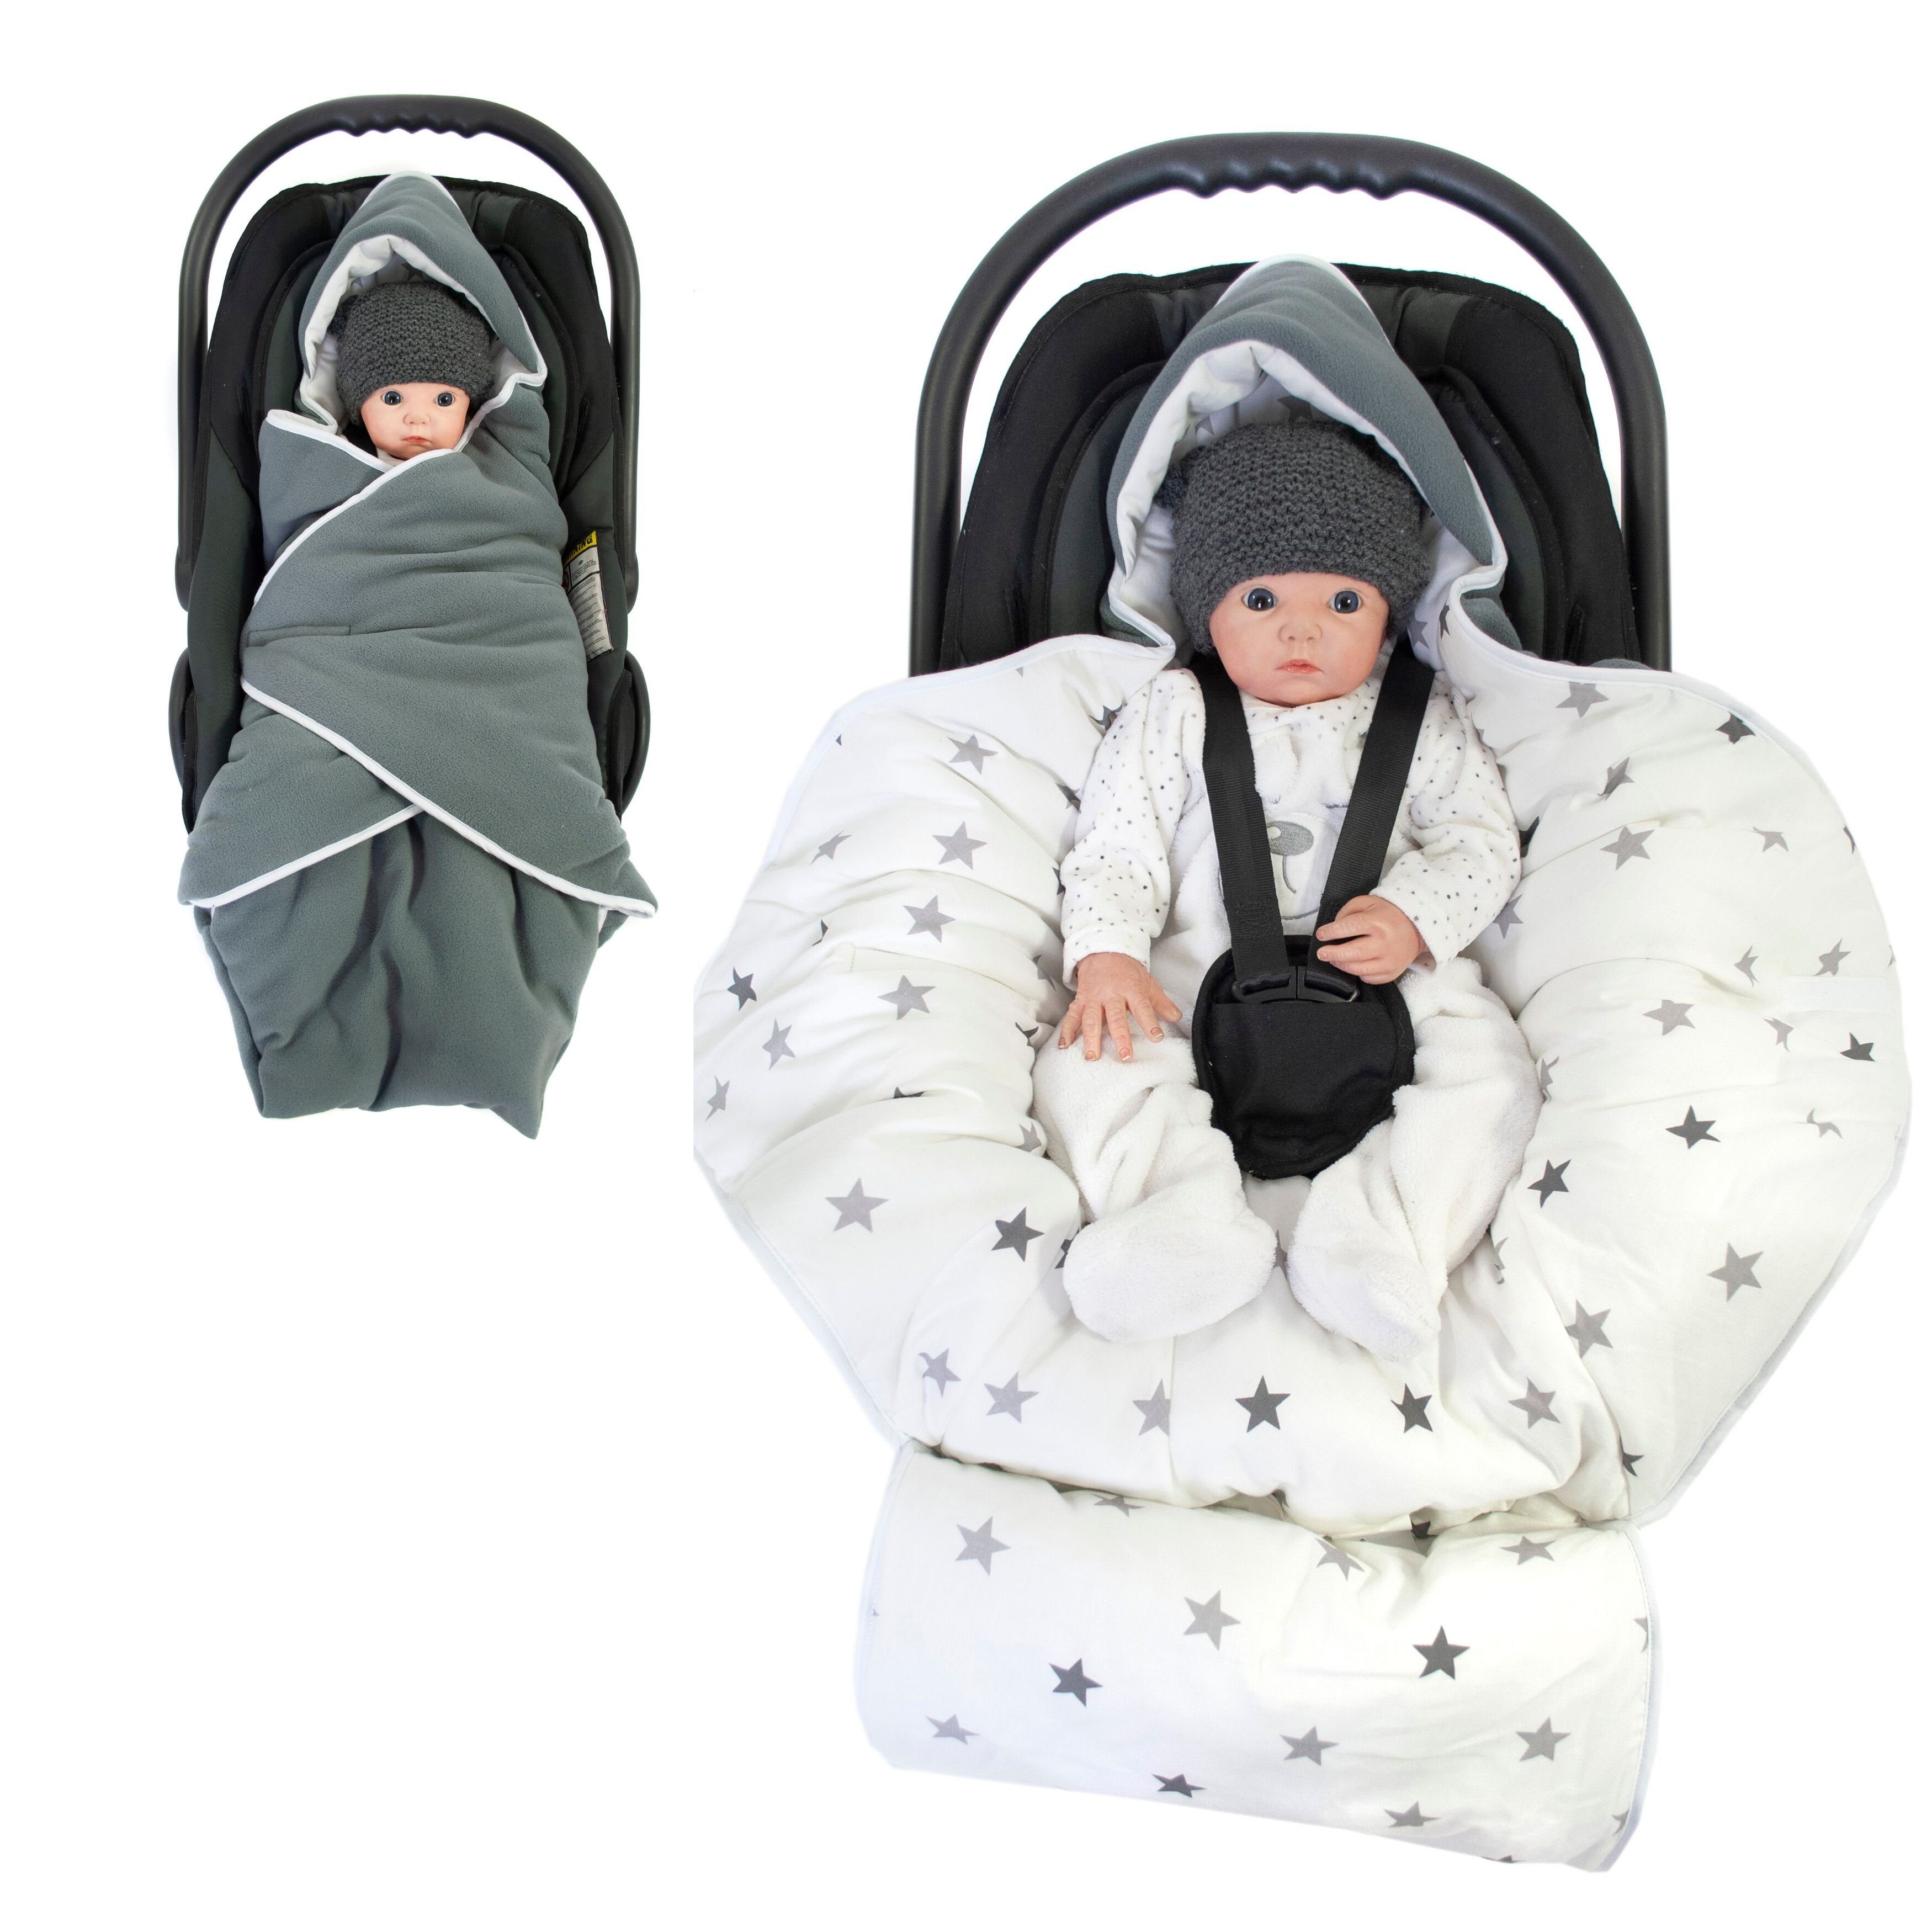 Babydecke Einschlagdecke XL grau/Sternenmuster weiß Winter, HOBEA-Germany, passend für Babyschalen mit 3- und 5-Punkt-Gurtsystem